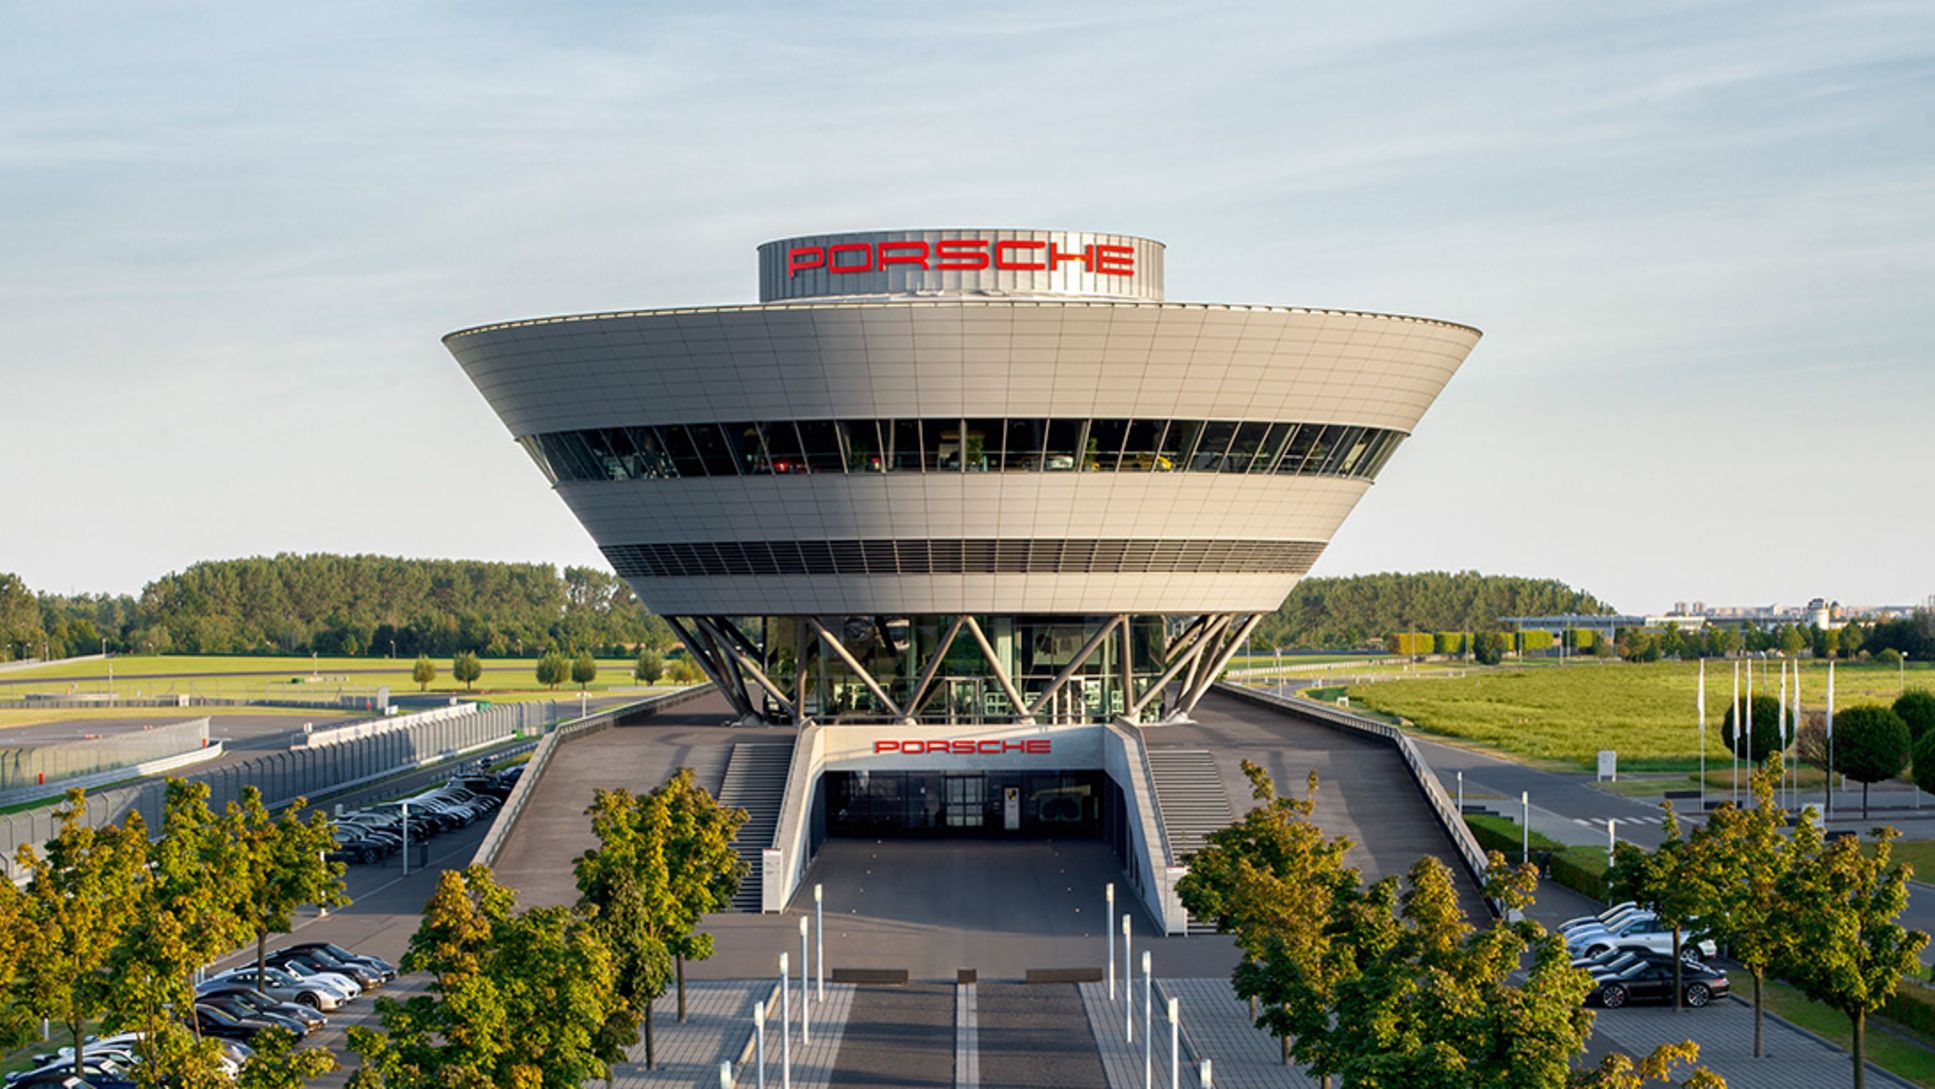 Standort Leipzig, 2019, Porsche AG